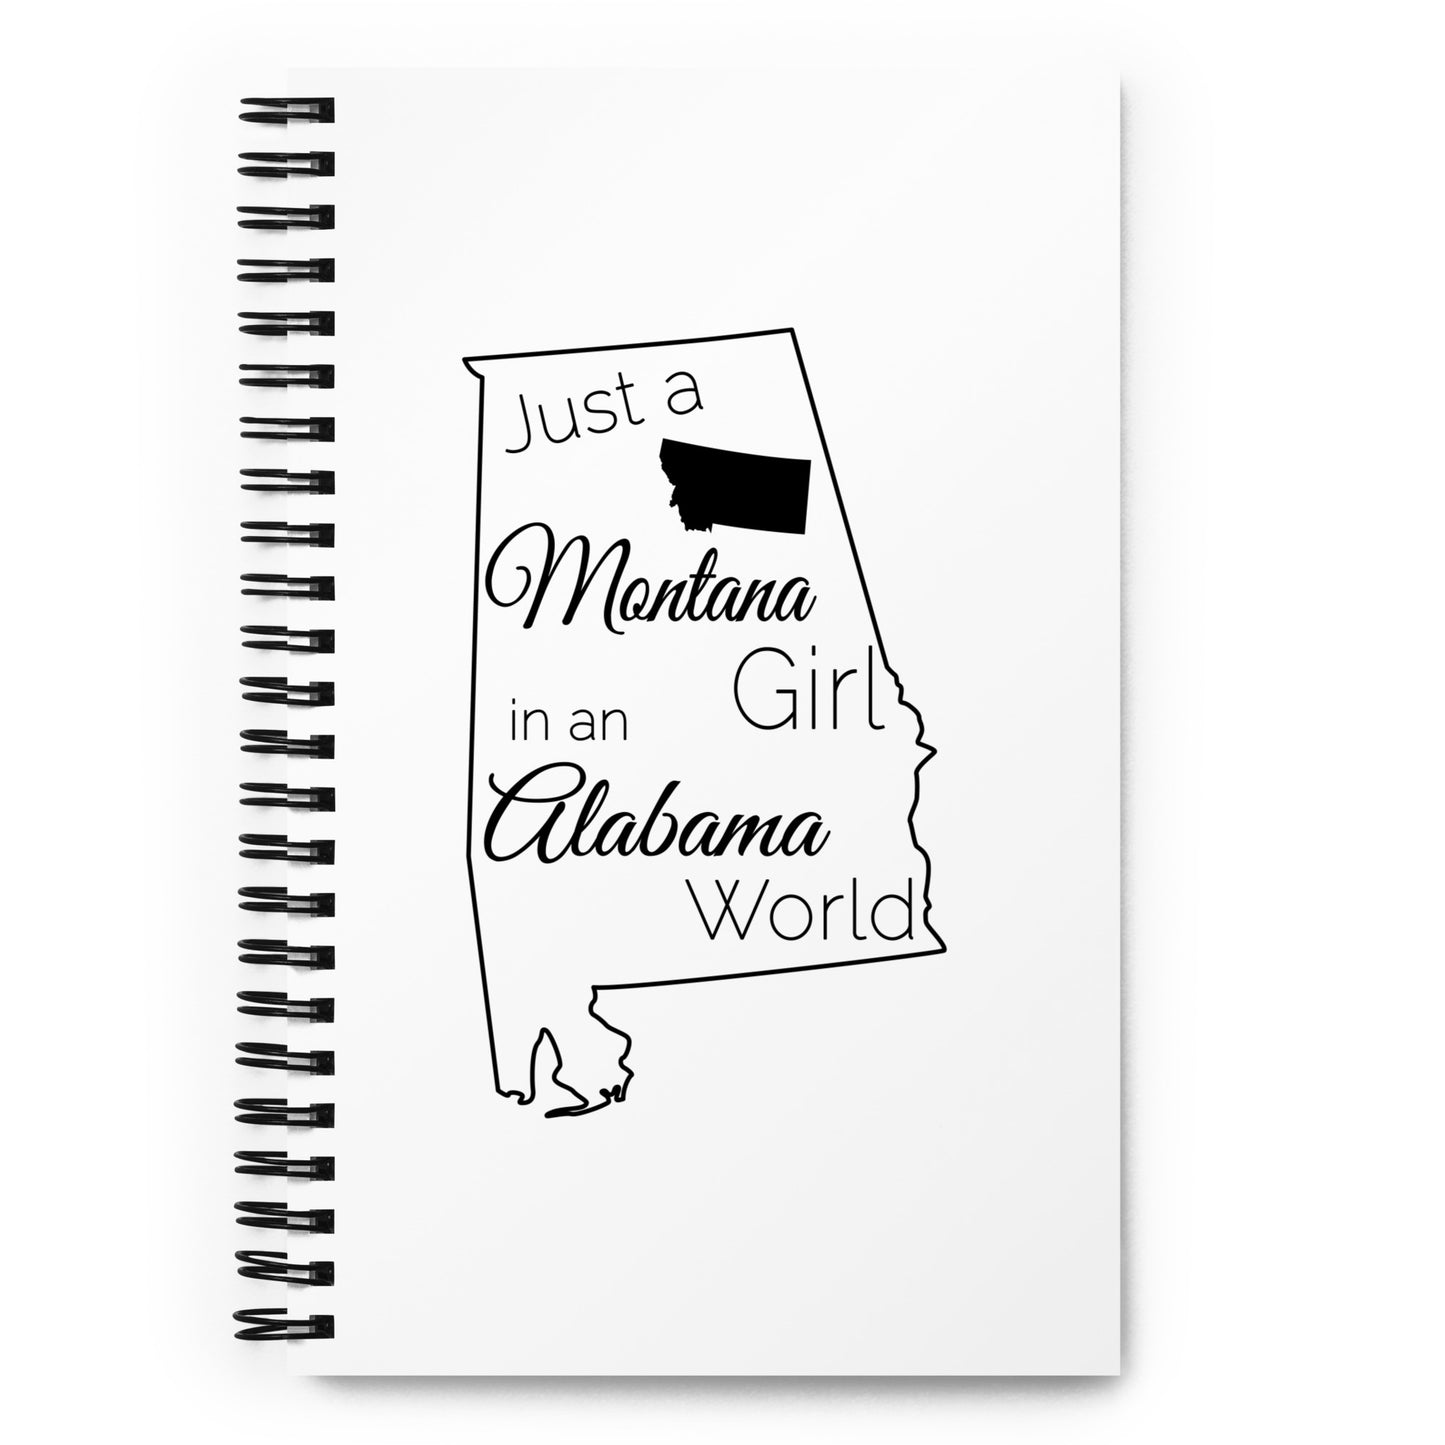 Just a Montana Girl in an Alabama World Spiral notebook